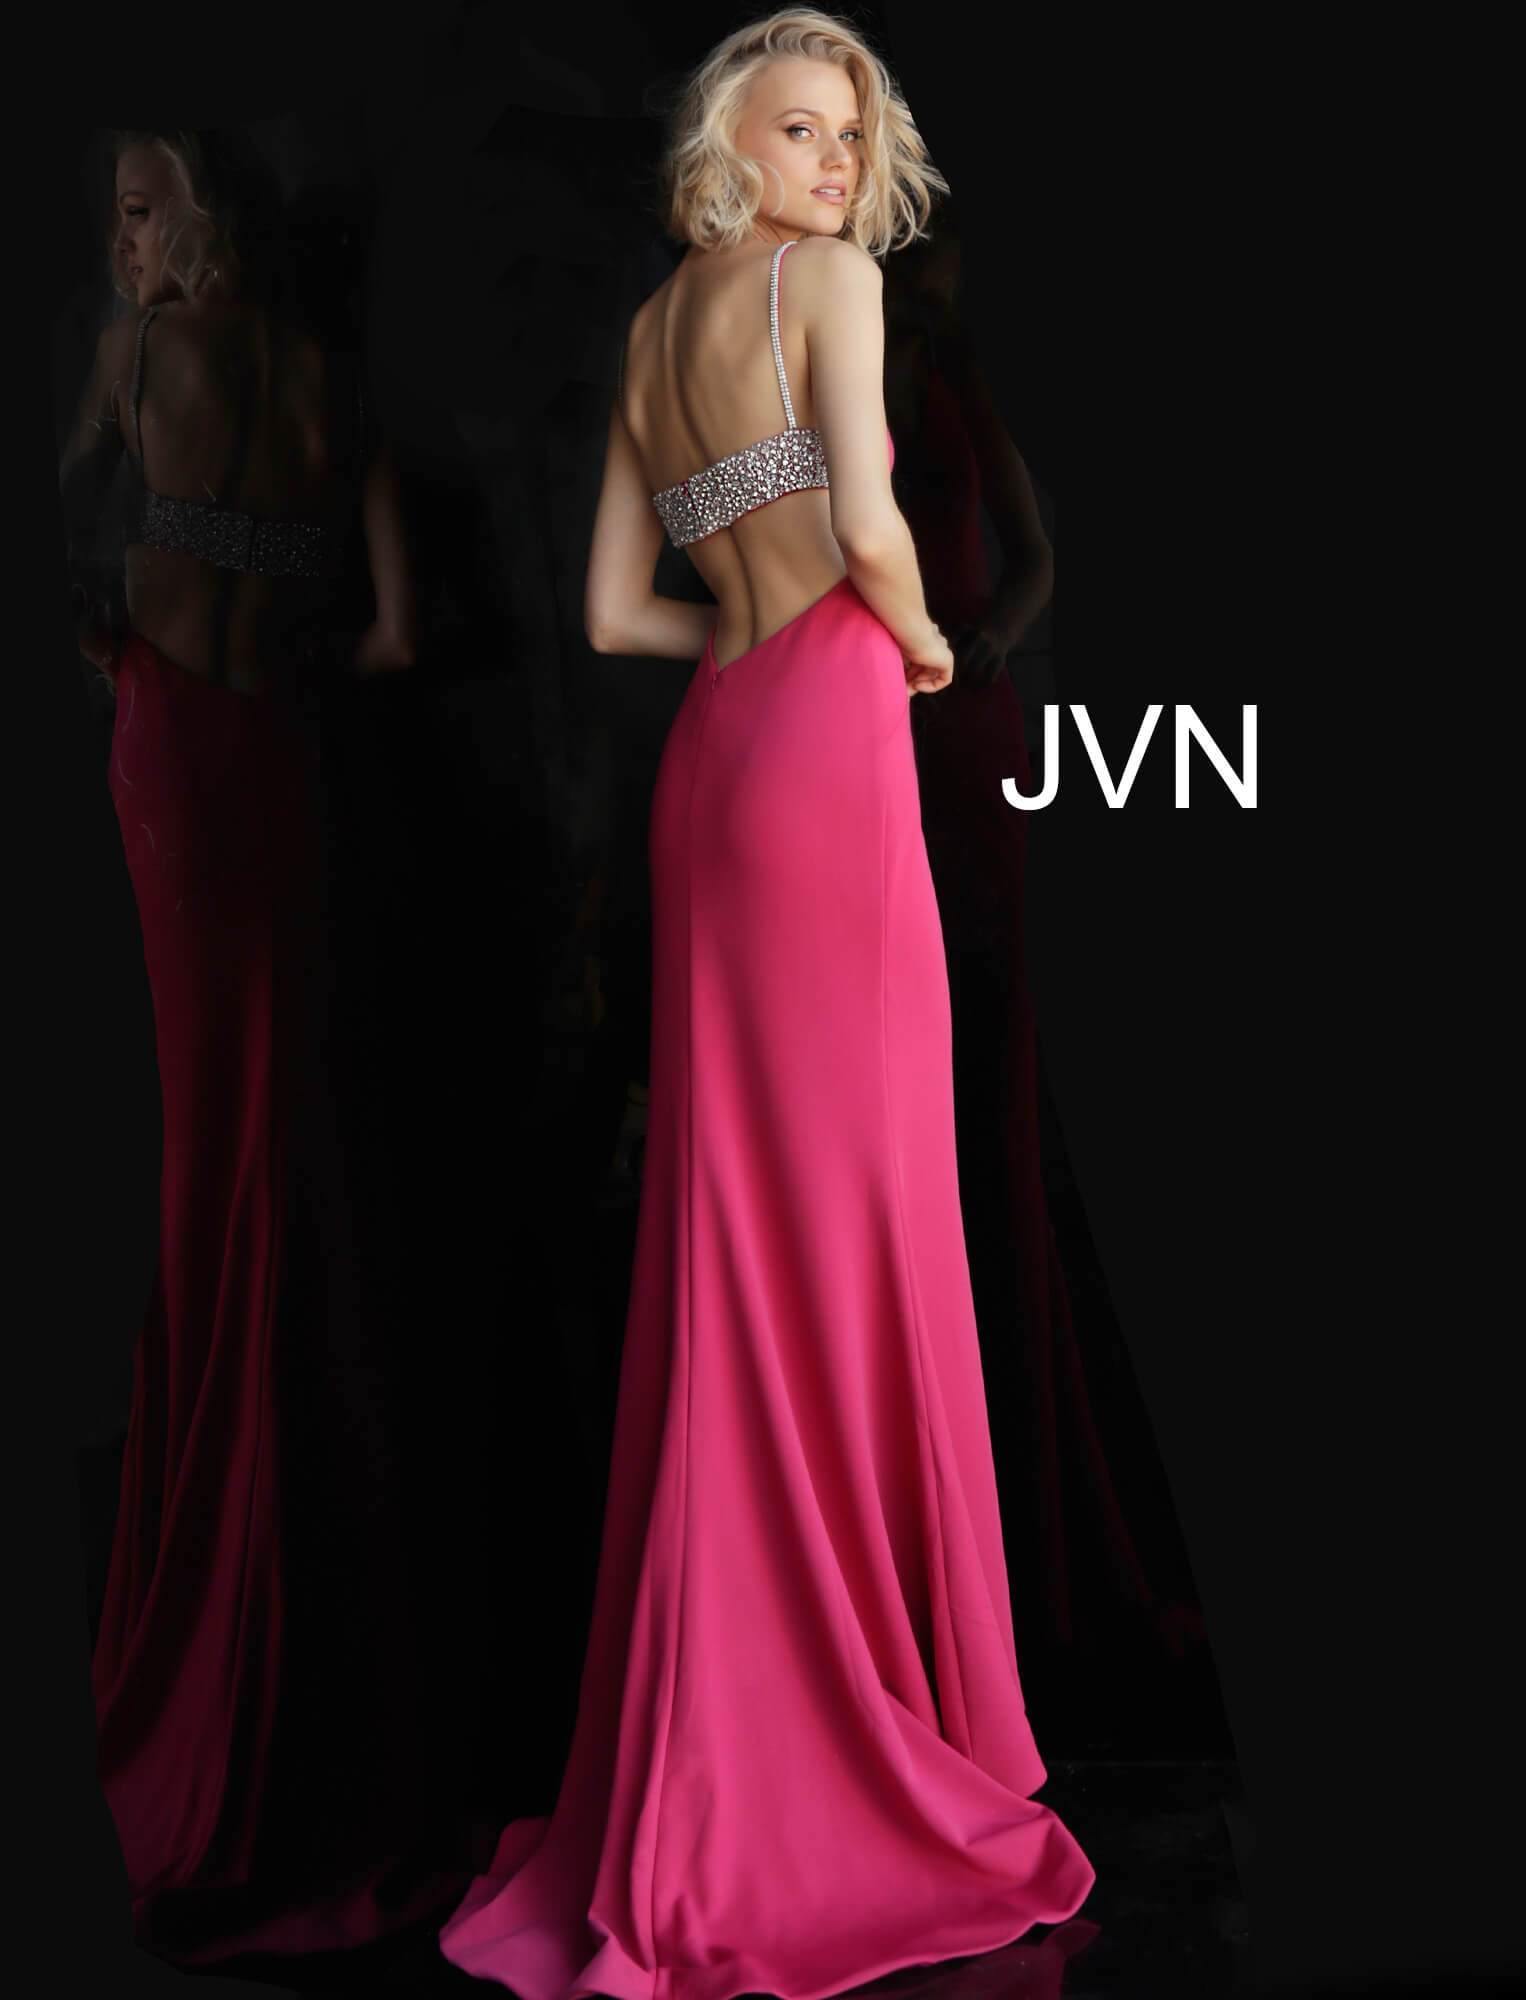 JVN By Jovani Long Formal Evening Prom Dress JVN68318 - The Dress Outlet Jovani